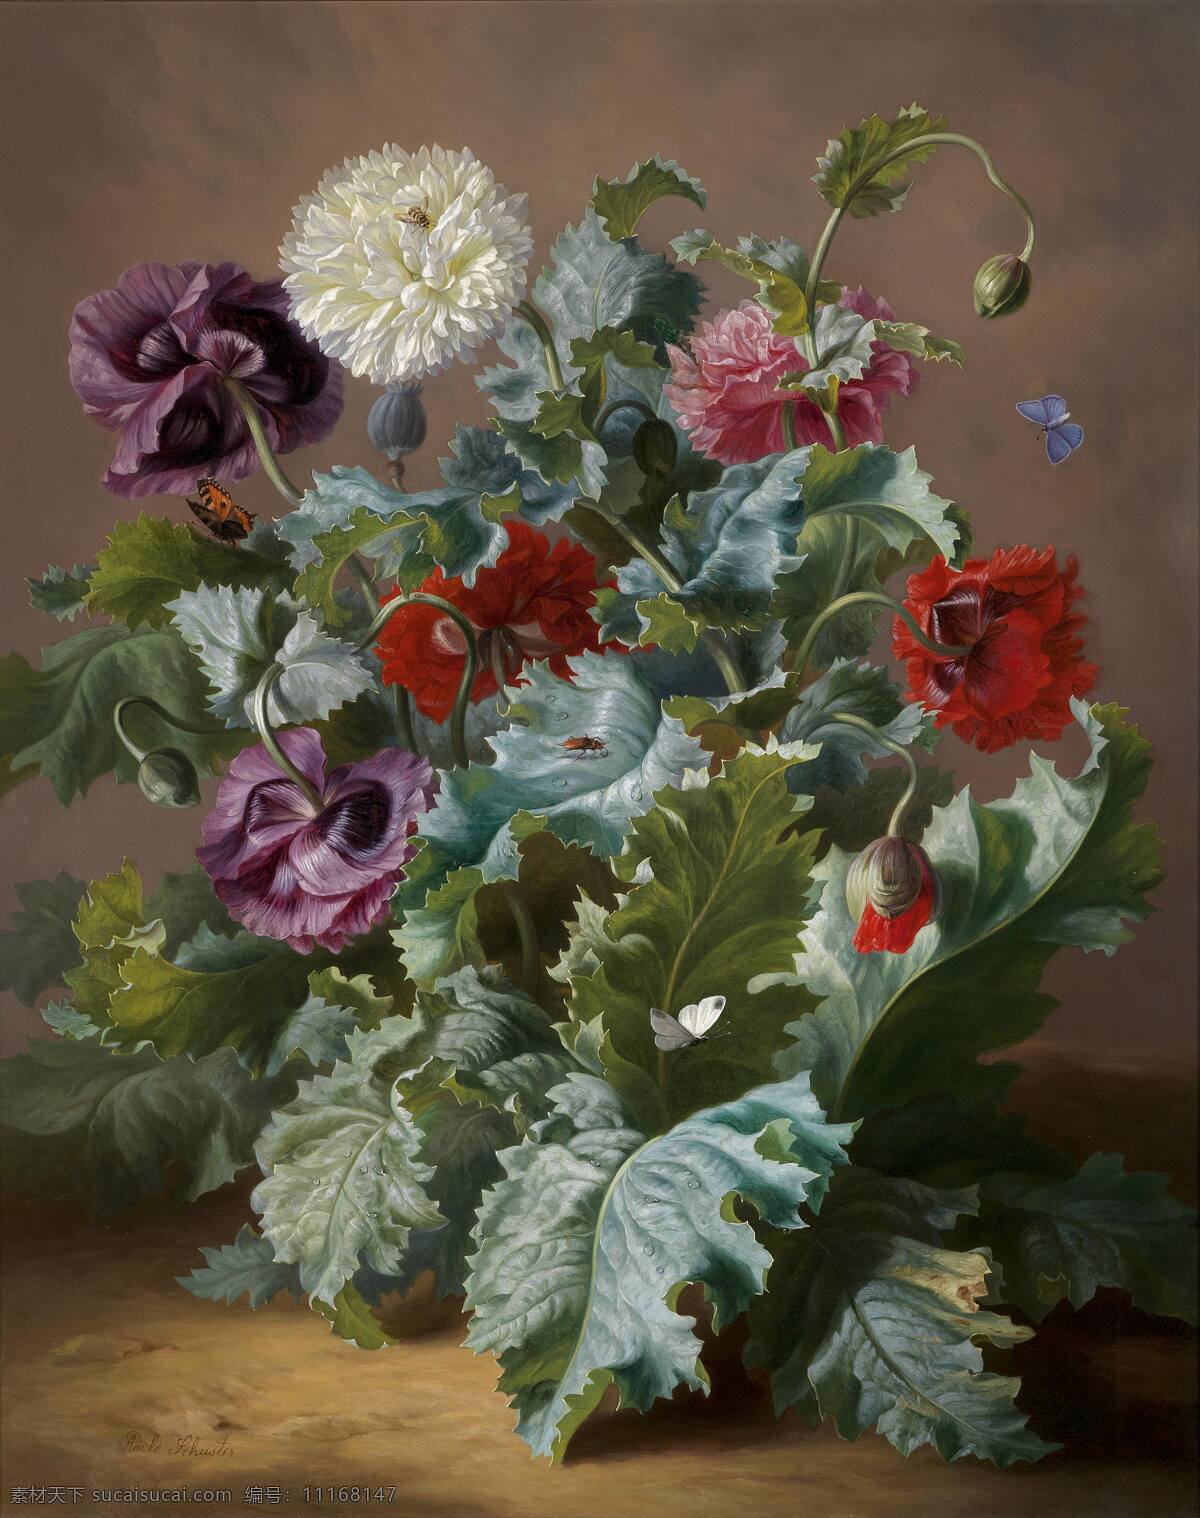 静物鲜花 野花 永恒之美 混搭鲜花 19世纪油画 油画 绘画书法 文化艺术